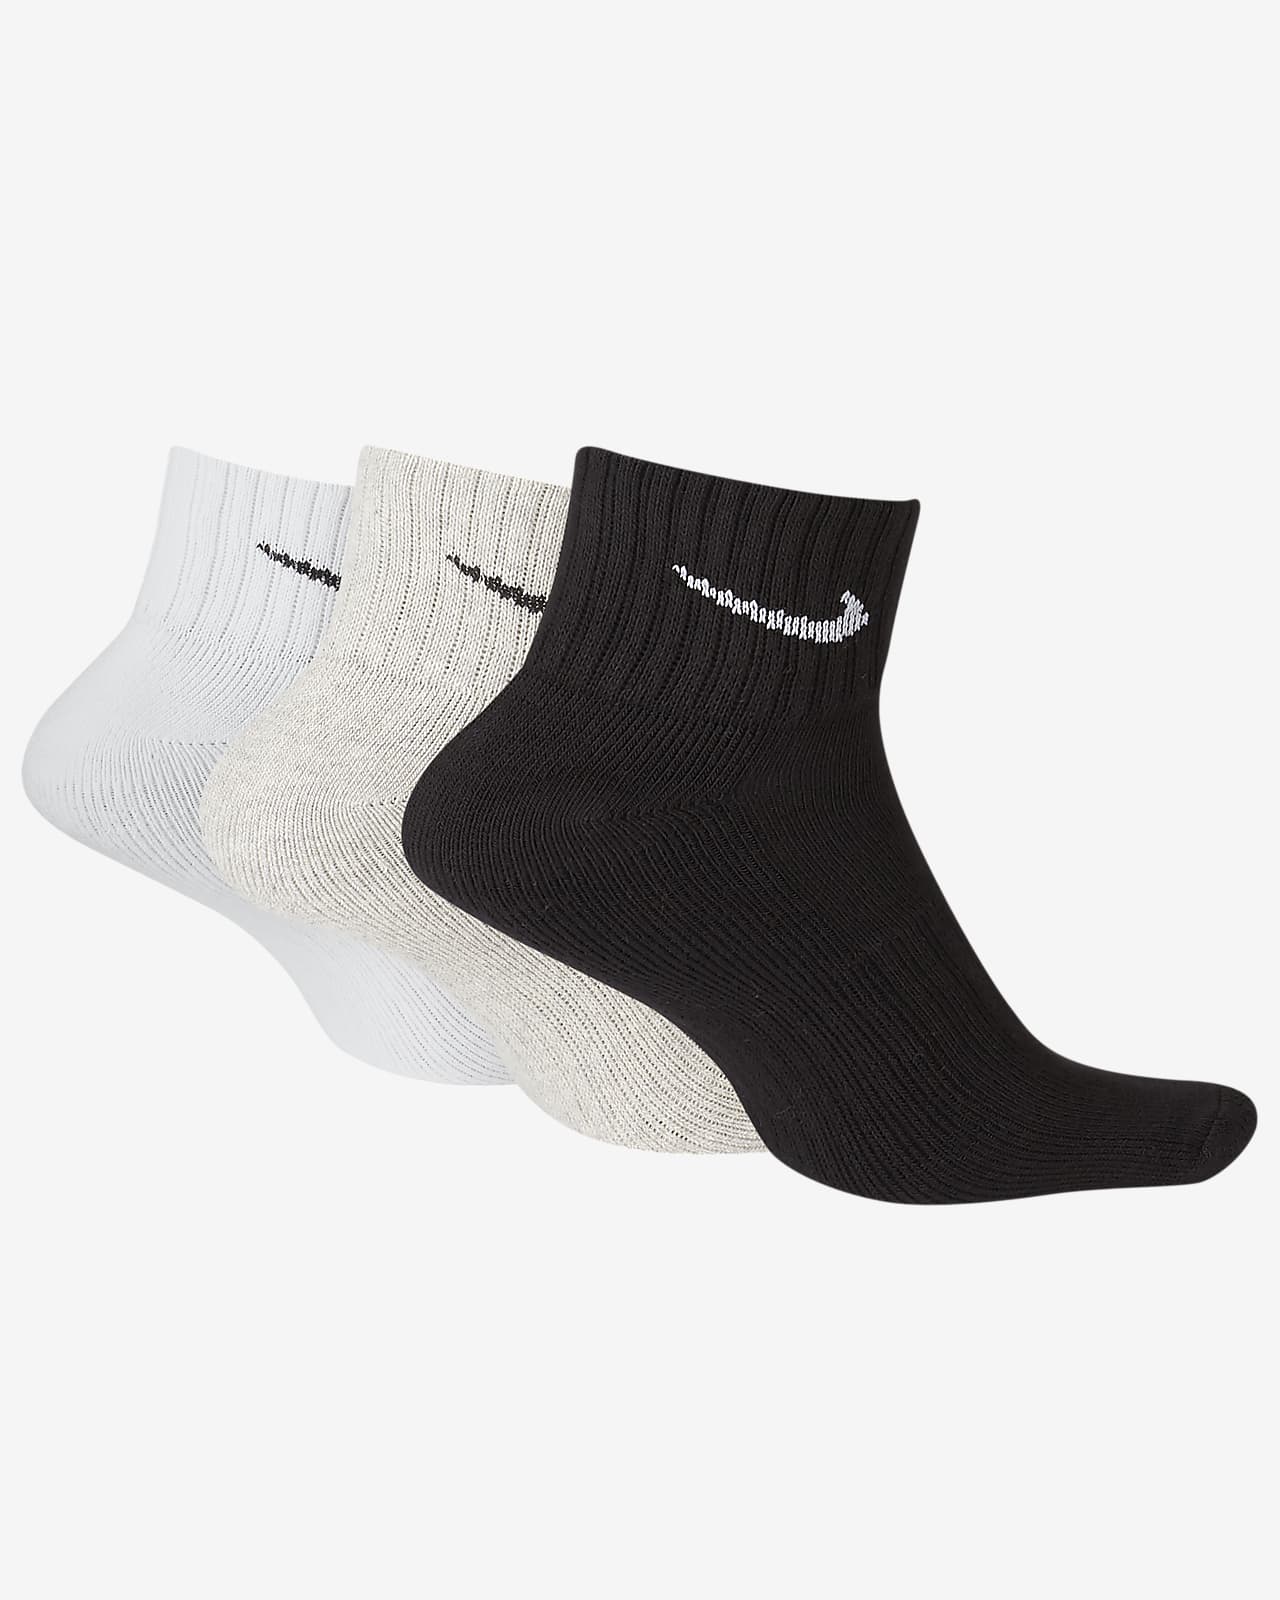 Socquettes rembourrées Nike (3 paires)